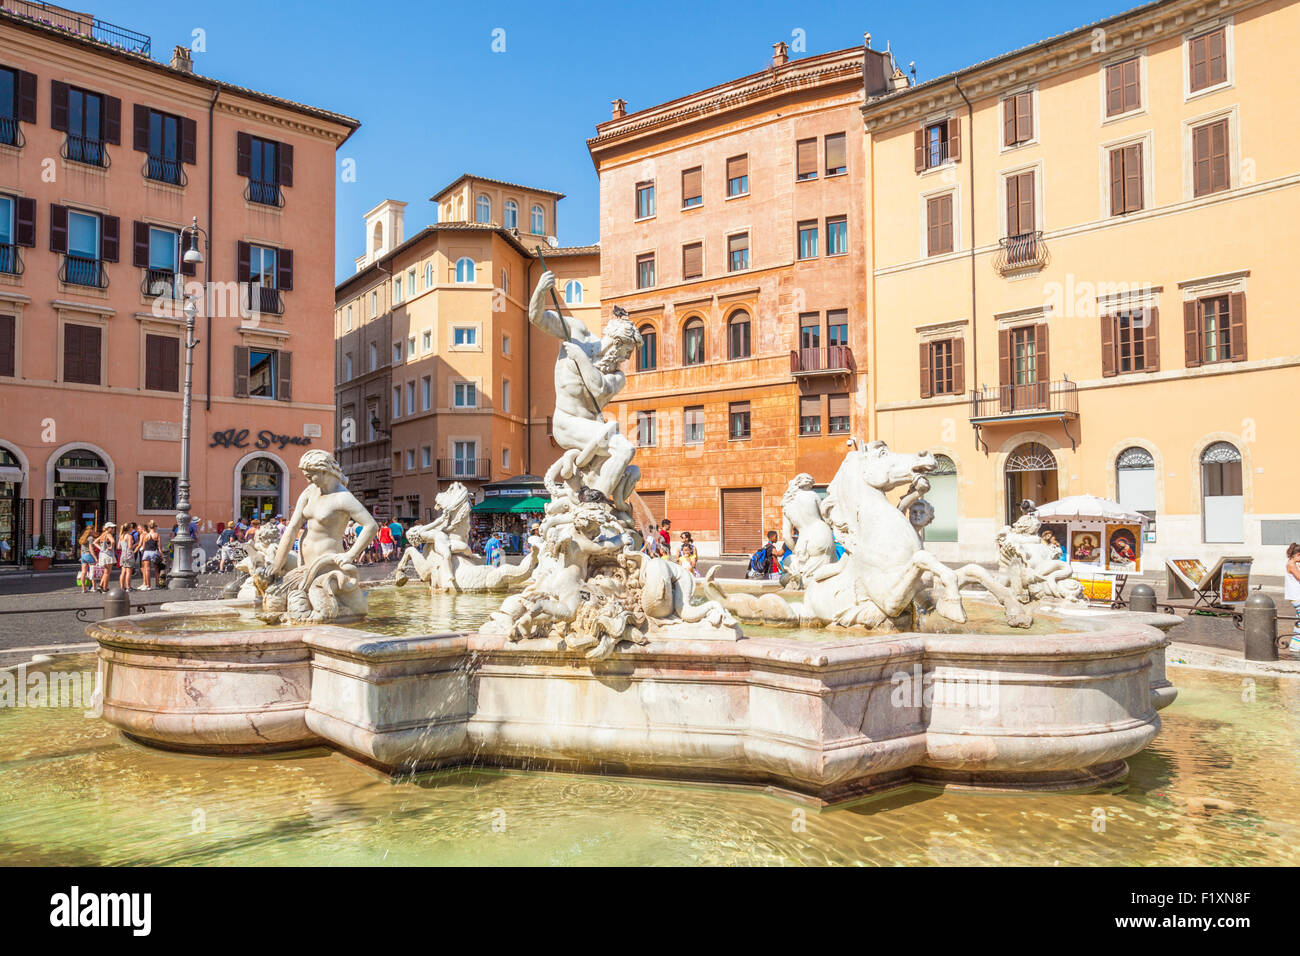 Fontana del Nettuno ou fontaine de Neptune de la Piazza Navona Rome Italie Roma Lazio Italie Europe de l'UE Banque D'Images